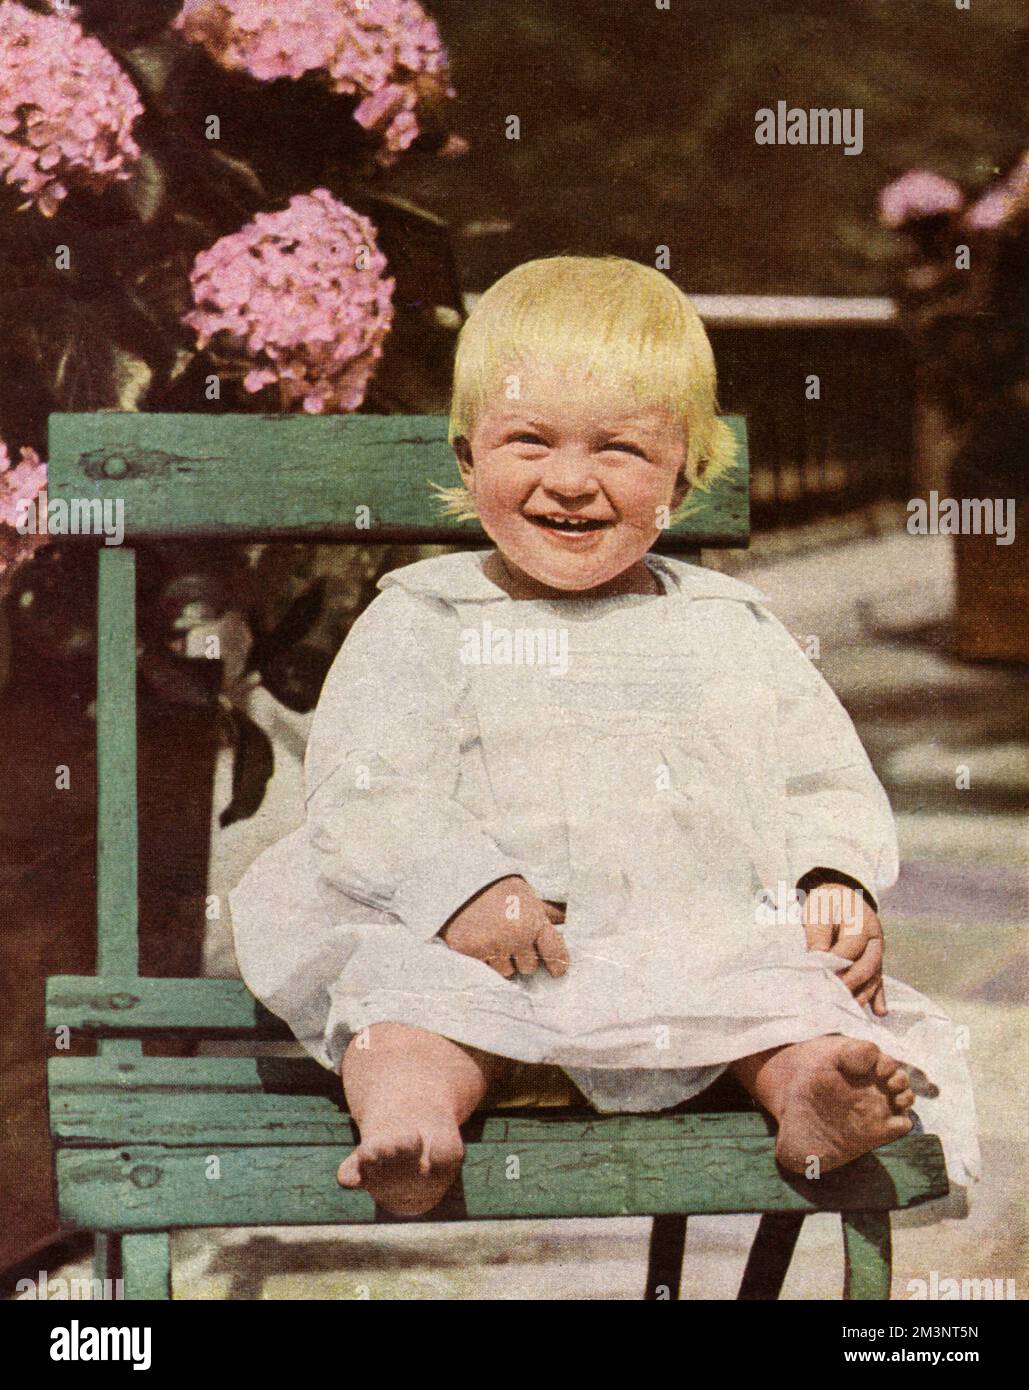 Principe Filippo, Duca di Edimburgo (1921), raffigurato all'età di quattordici mesi nel 1922. Il principe Filippo era il figlio più giovane del principe e della principessa Andrea di Grecia. Data: 1922 Foto Stock